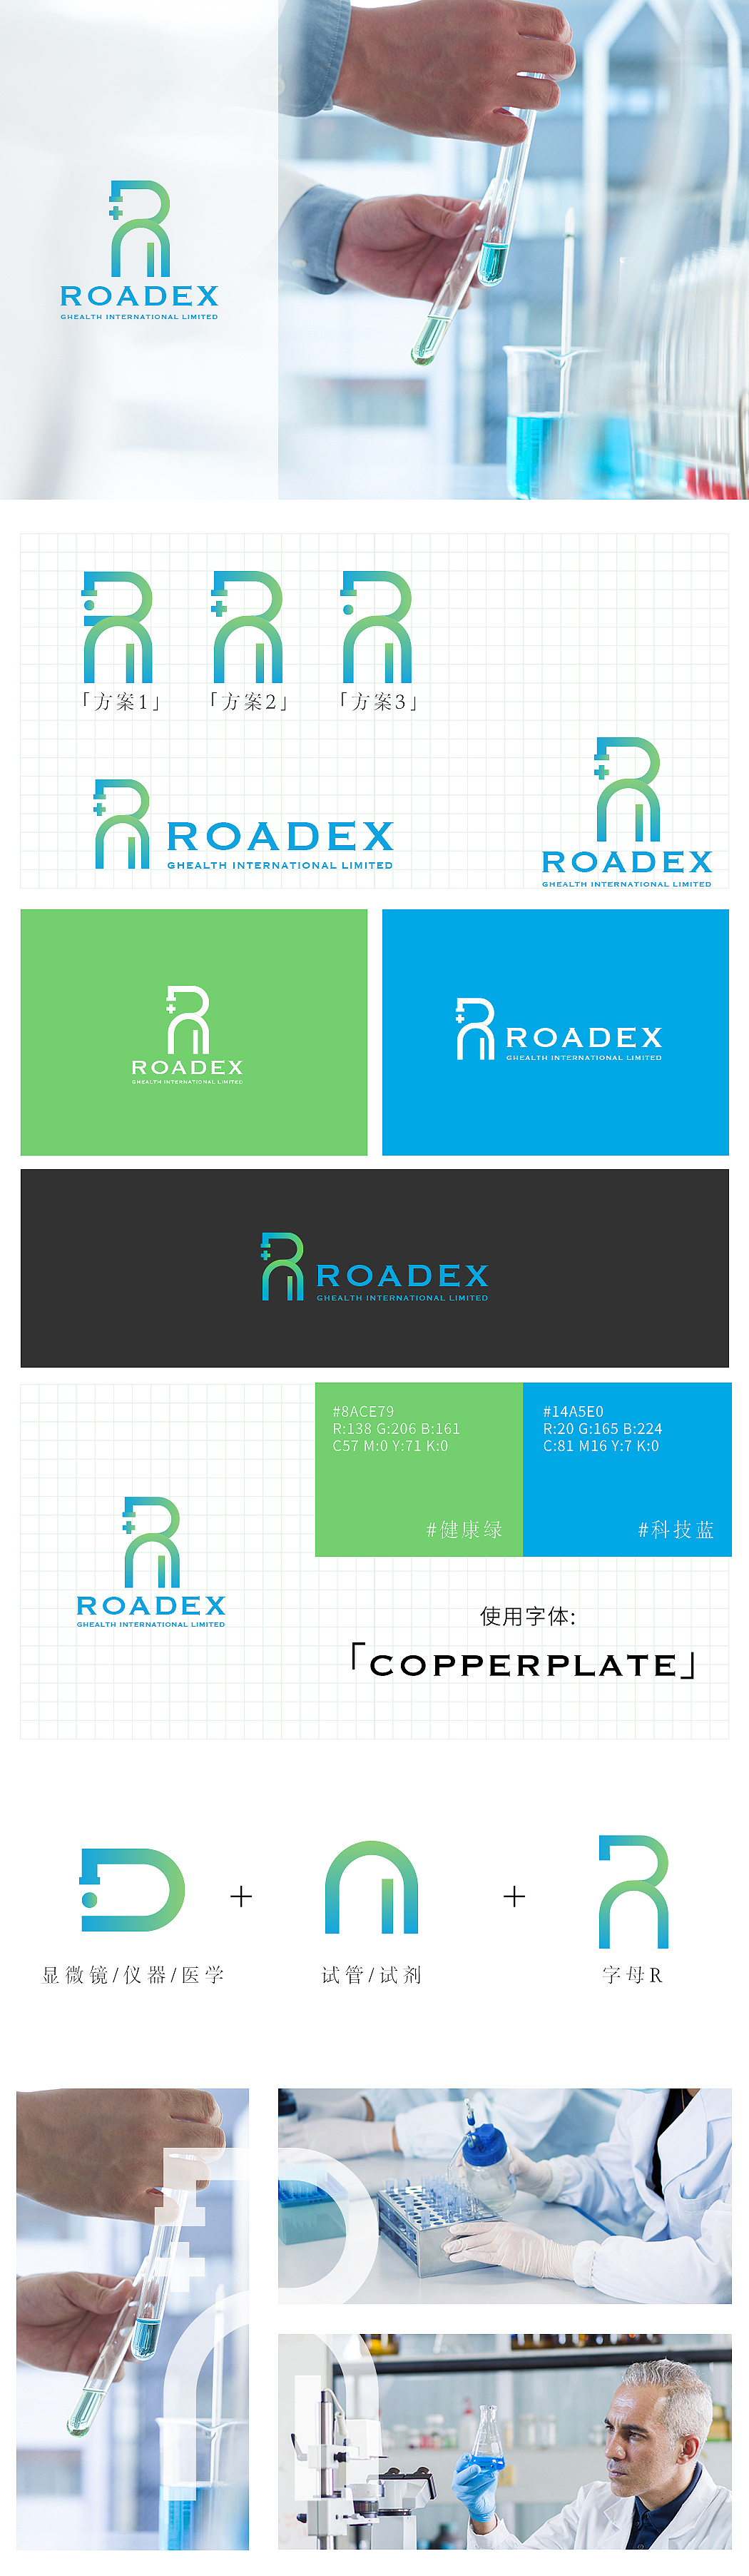 LOGO设计-Roadex医疗器械图0